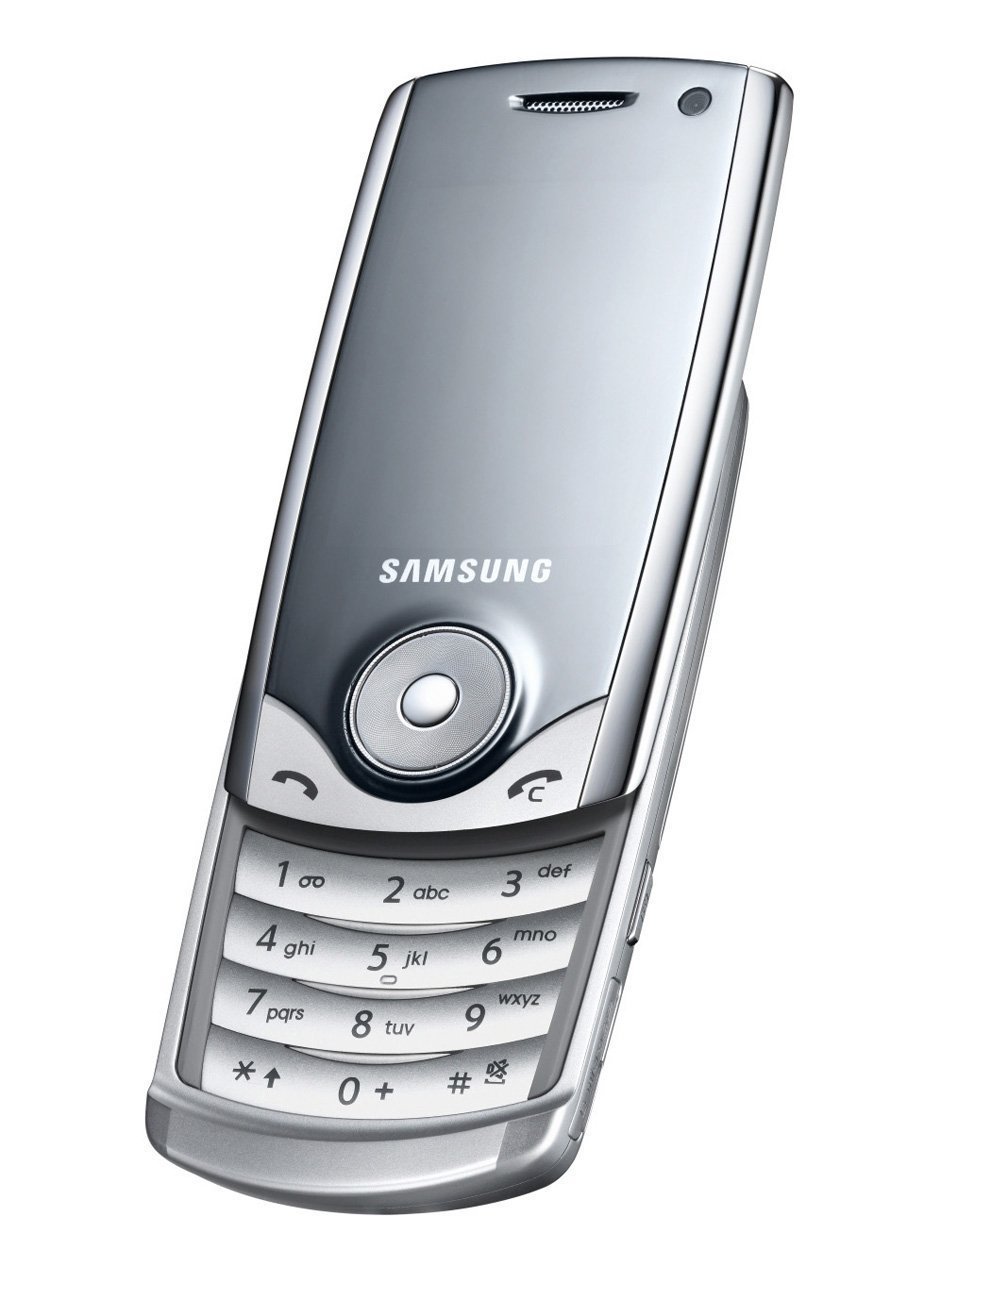 Was war euer erstes Samsung Handy? 📱 – Seite 6 - Samsung Community